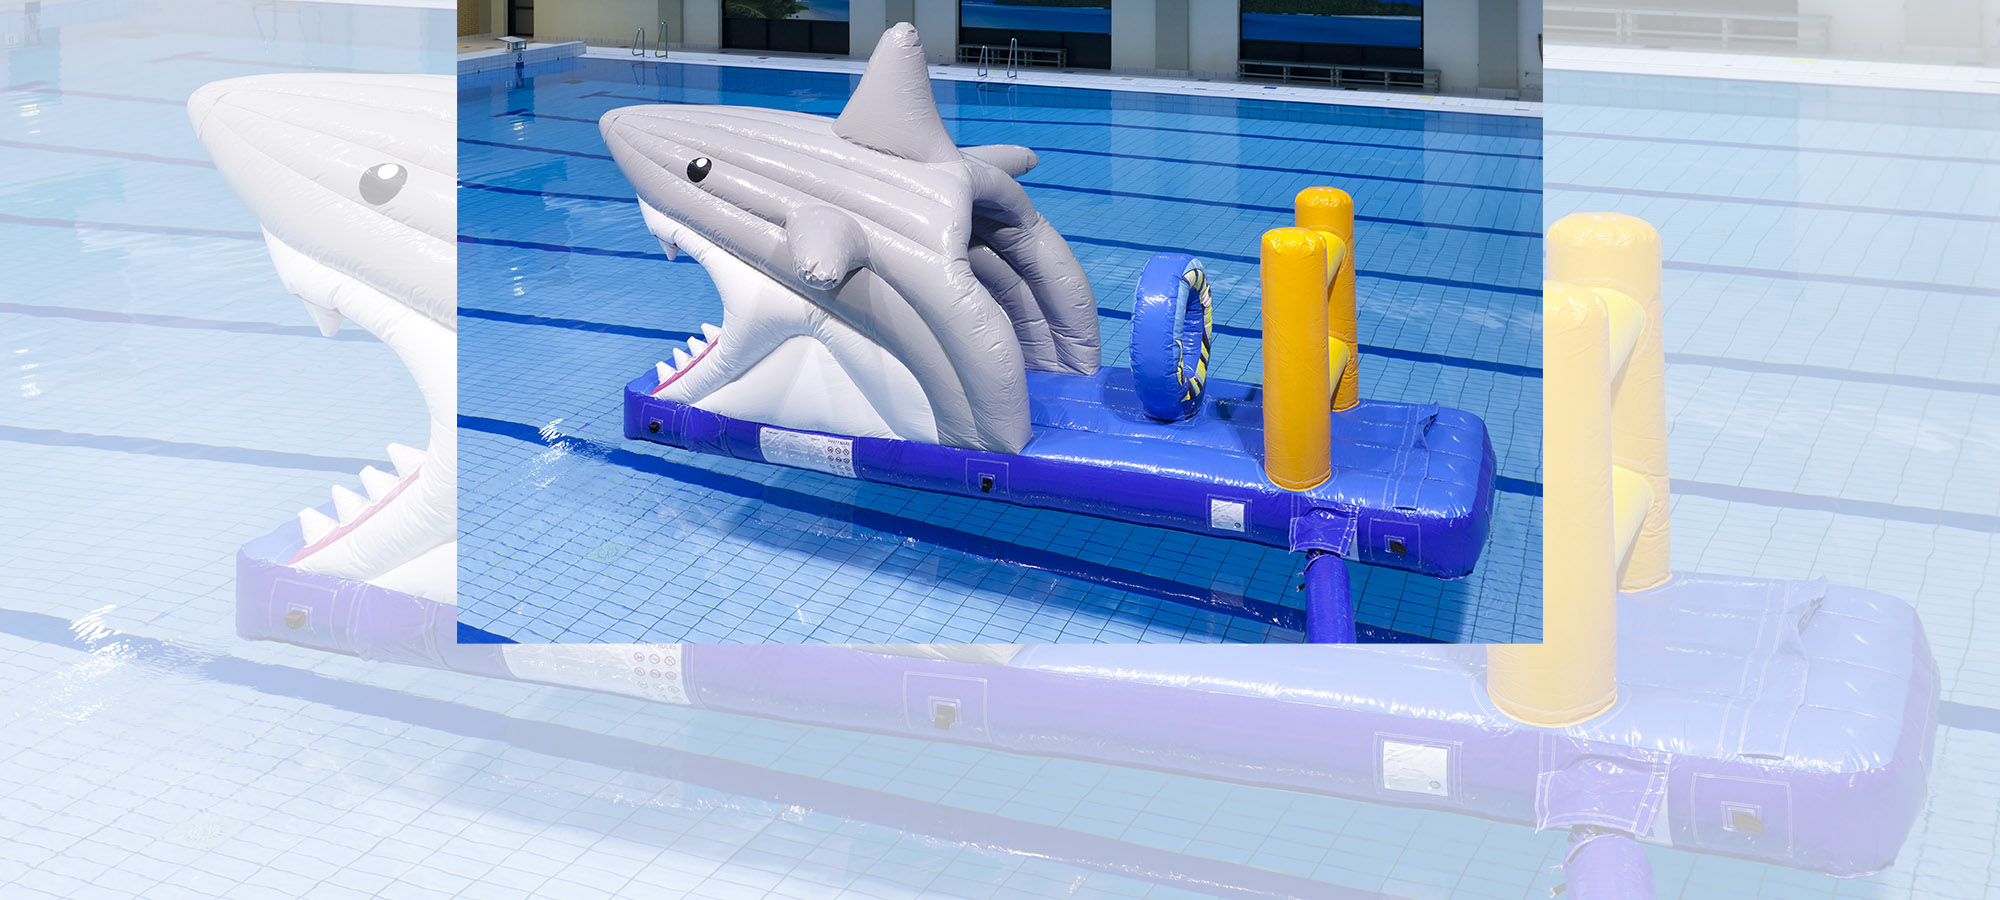 Zwembad hindernissenbaan haai